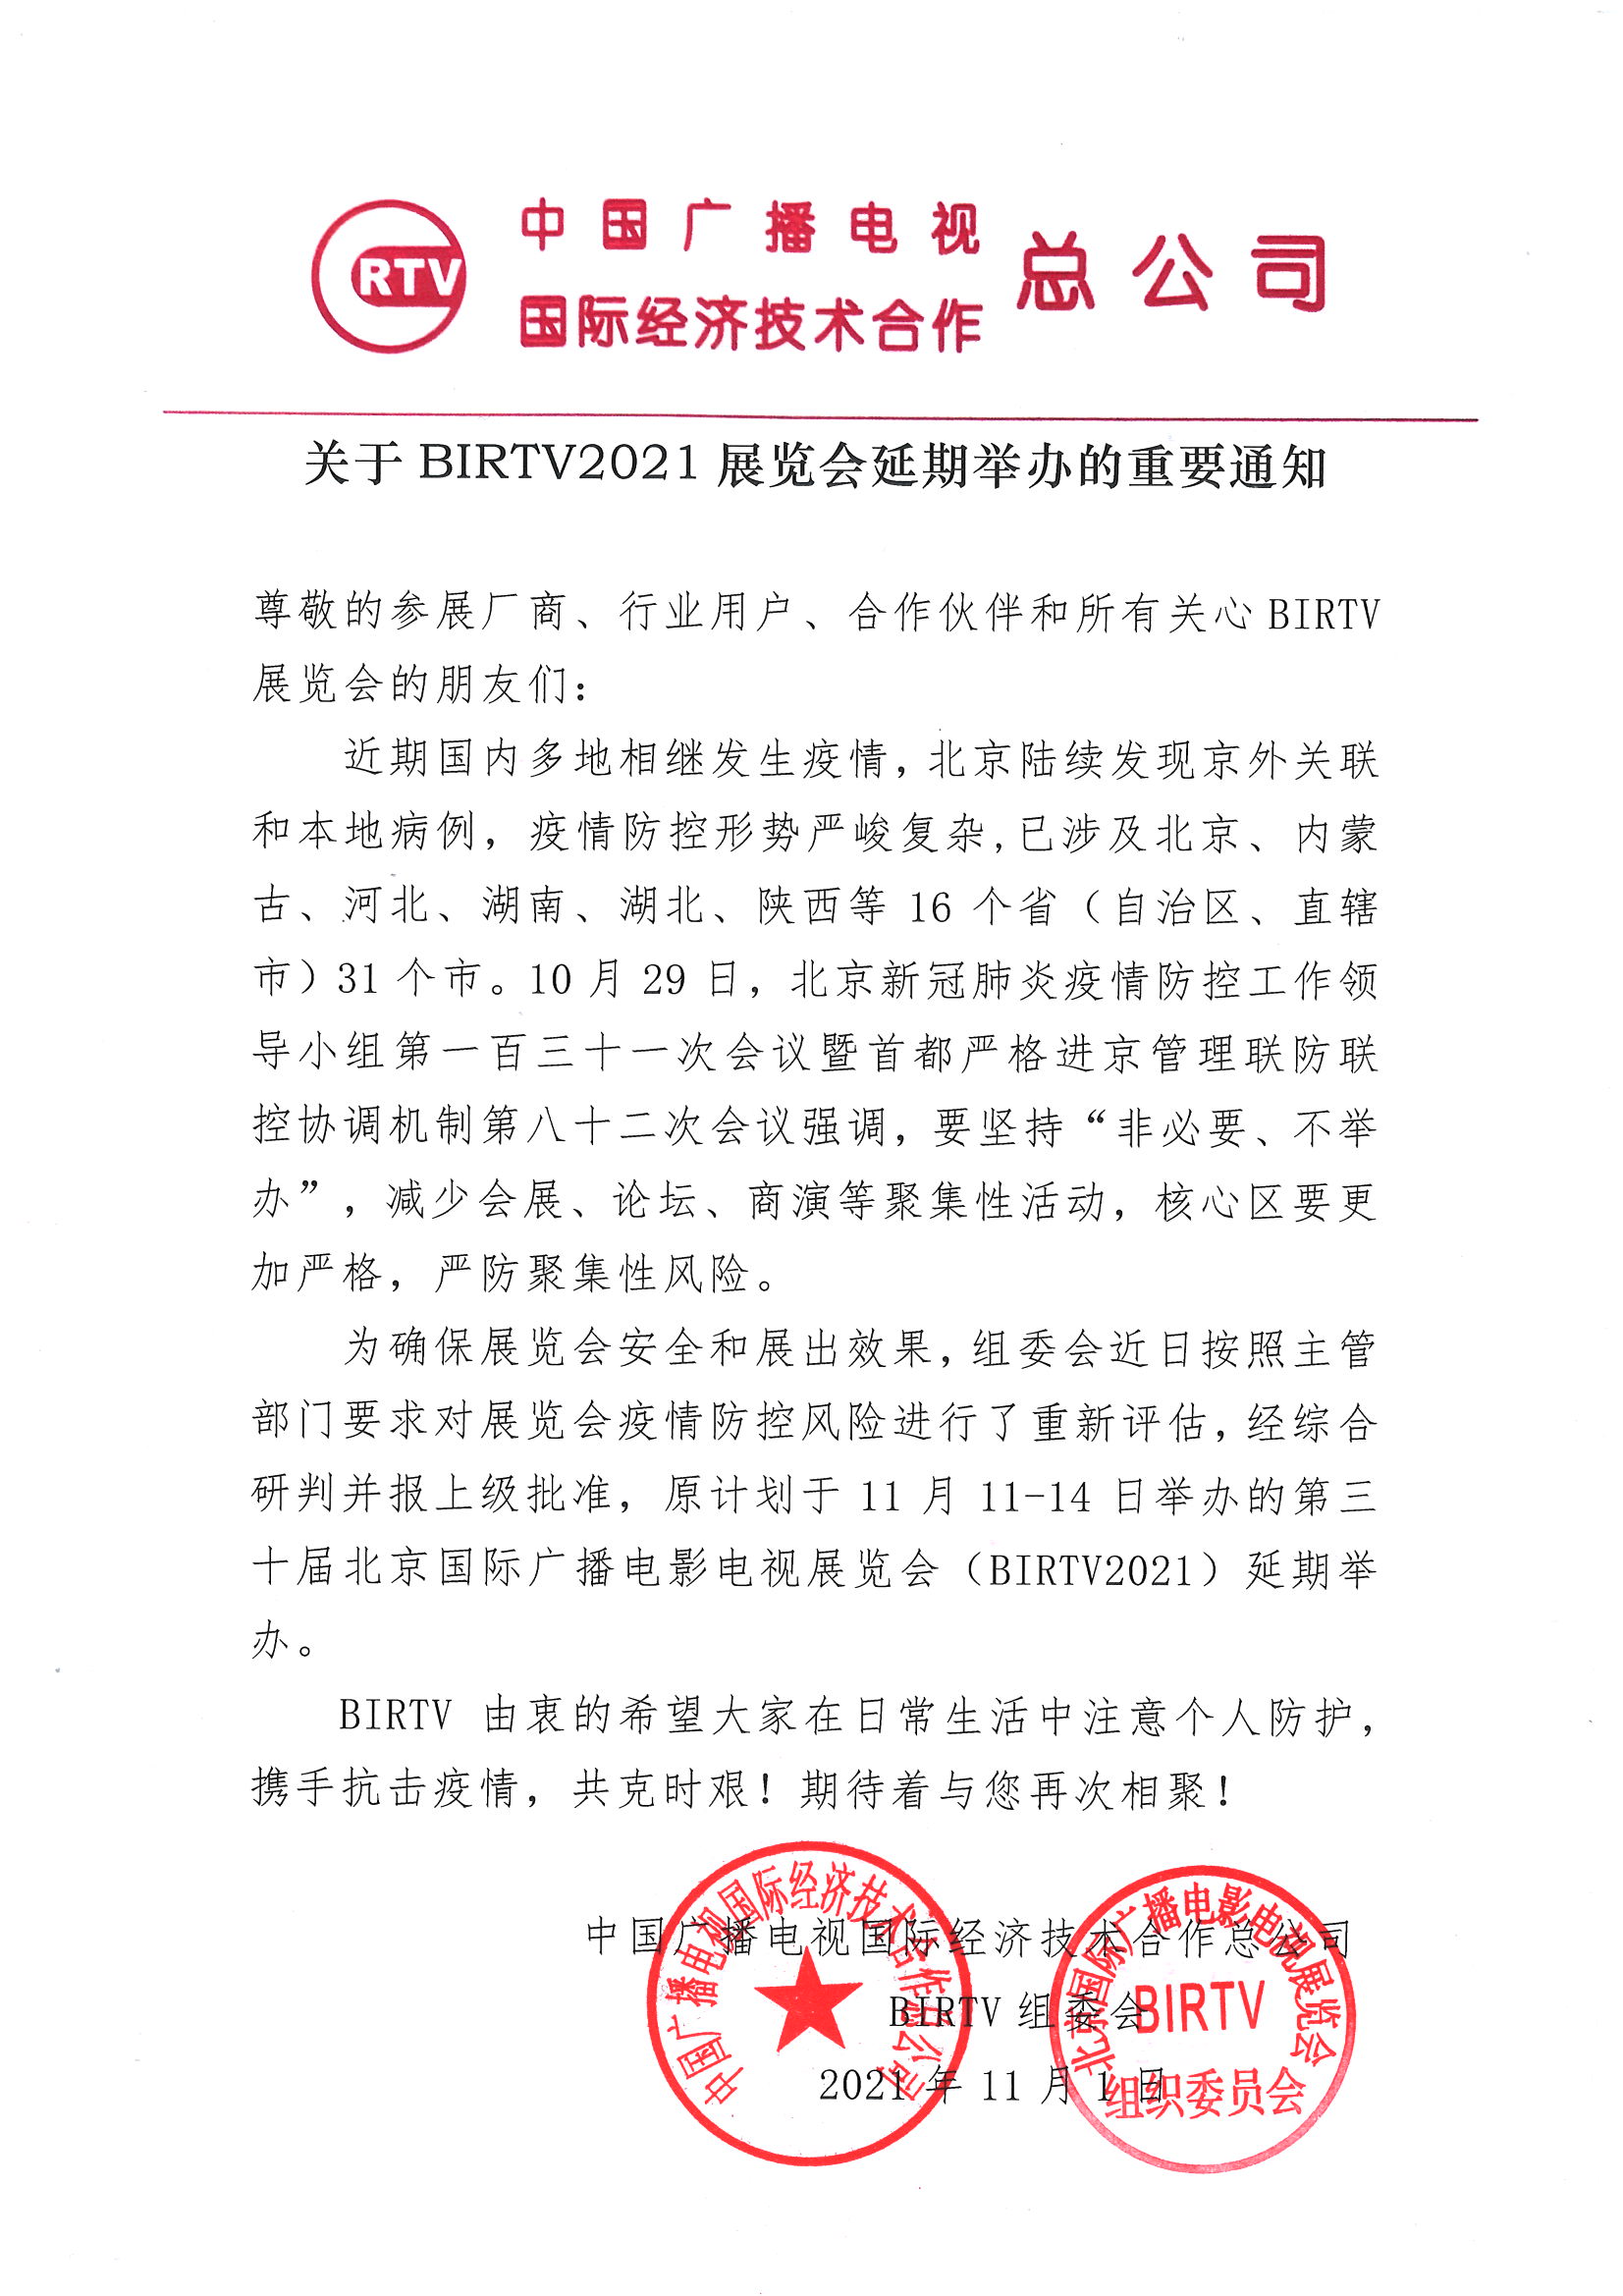 关于BIRTV2021展览会延期举办的重要通知